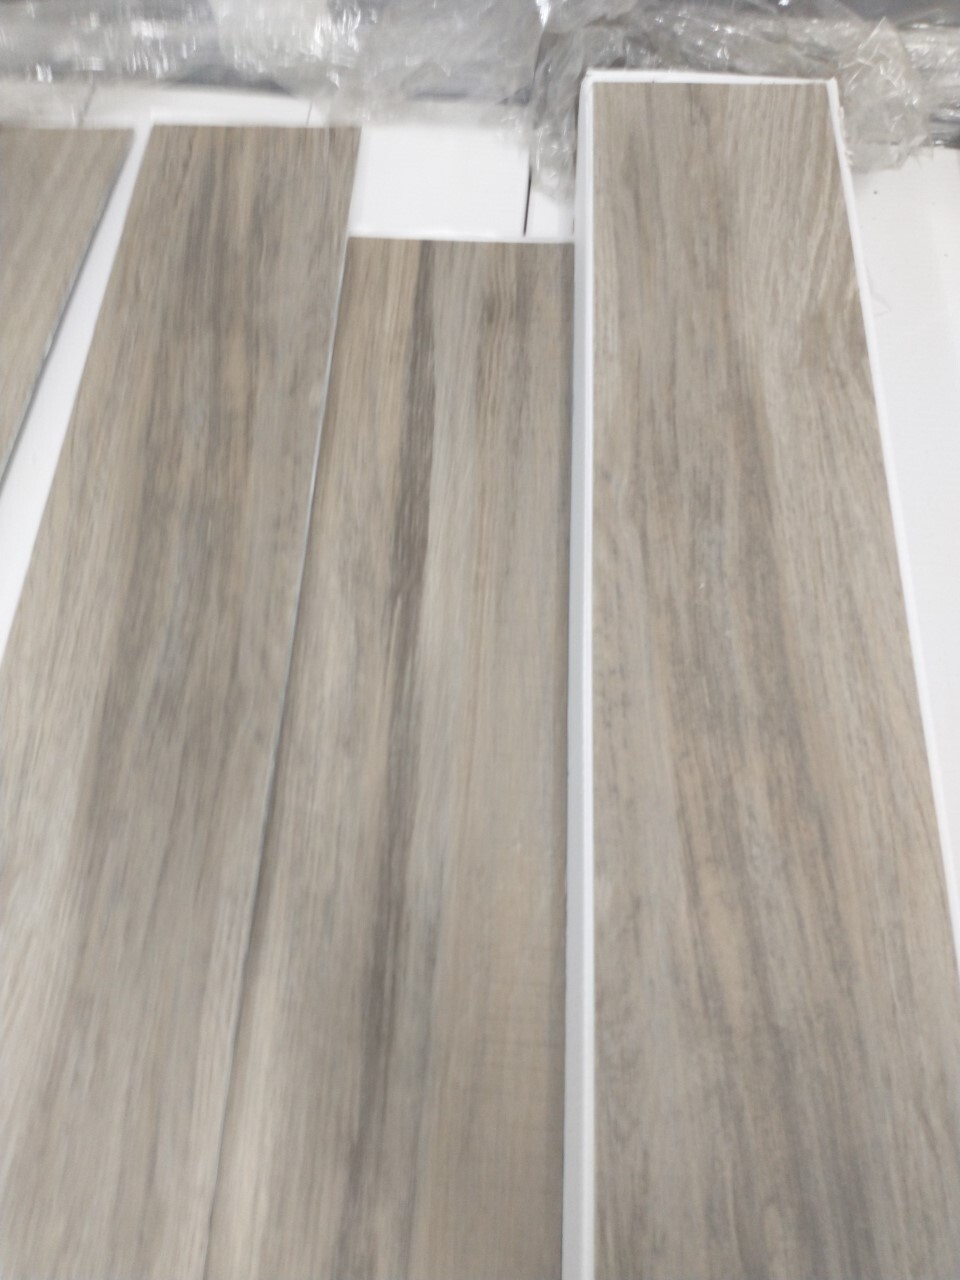 46541 - Mohawk EZ Plank Flooring USA